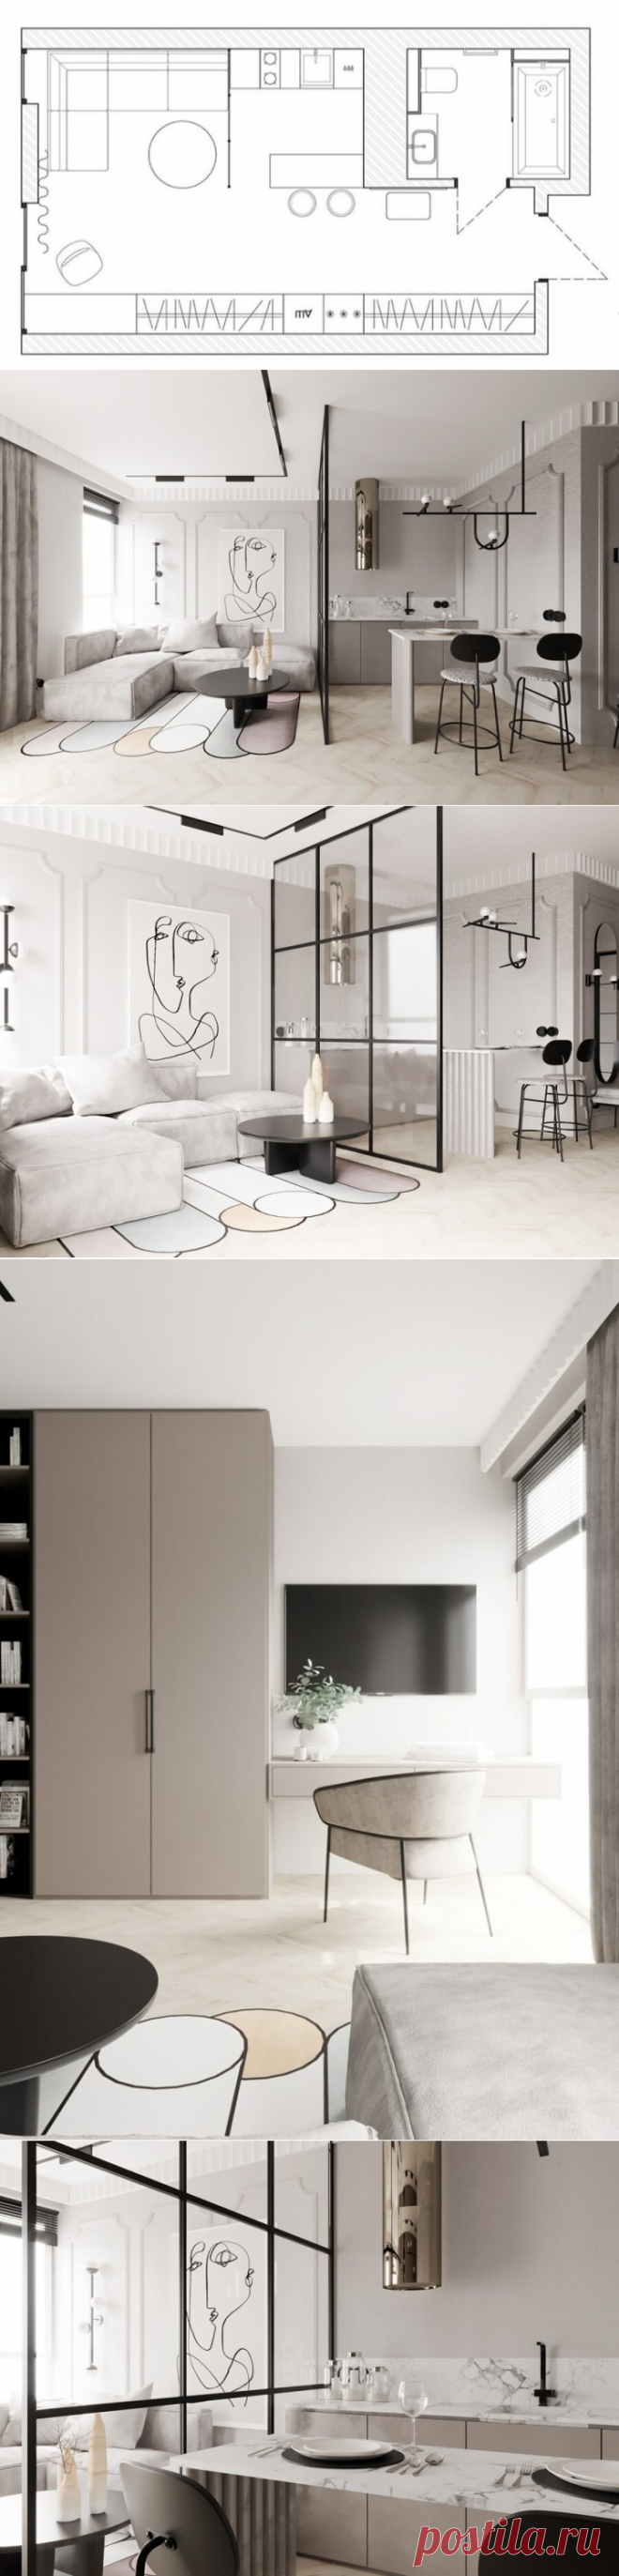 Элегантный стиль: светлый интерьер квартиры-студии площадью 30 м² | Architect Guide | Яндекс Дзен